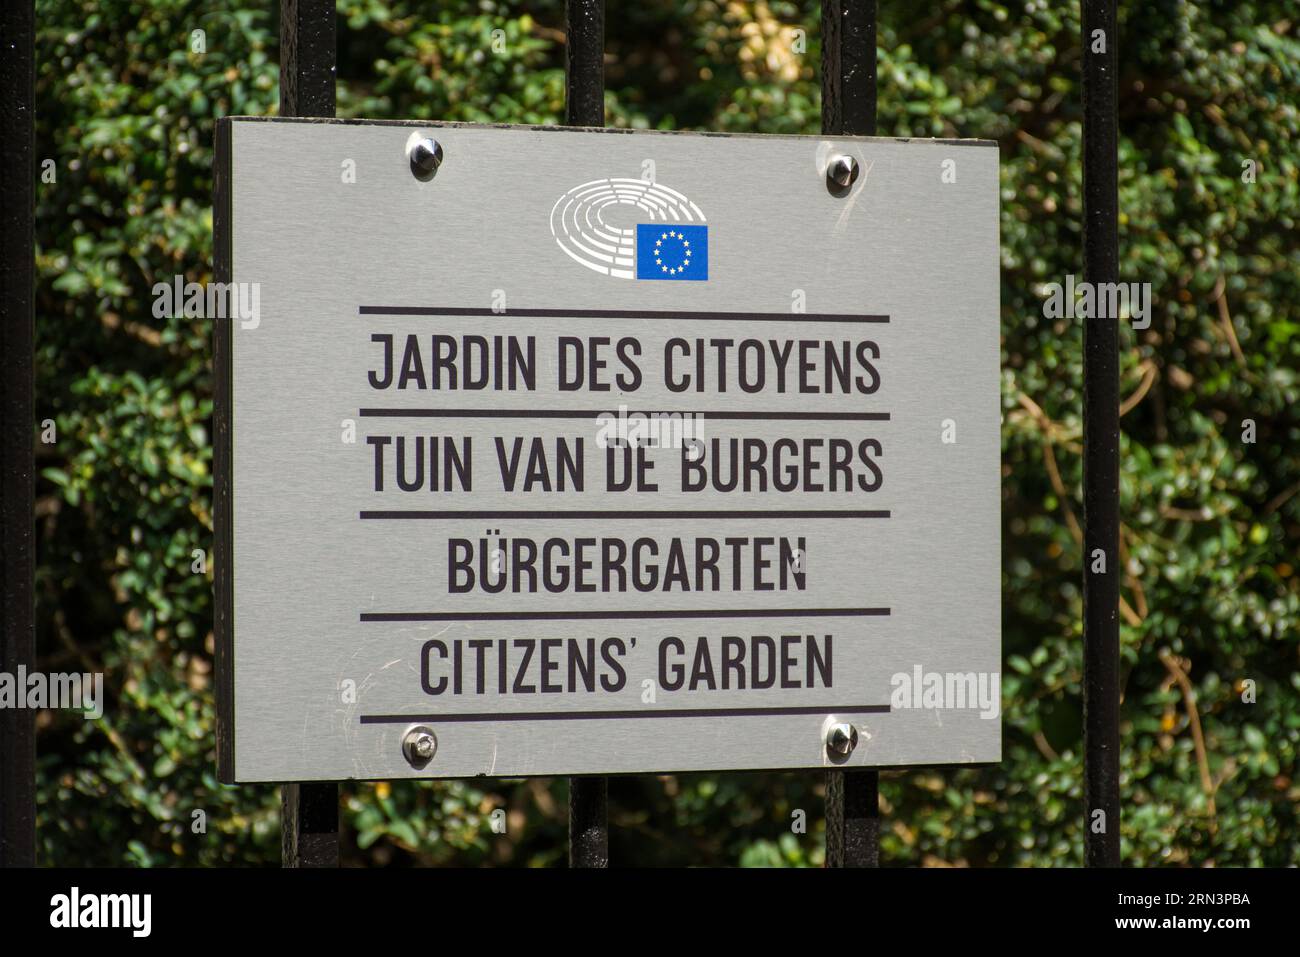 Le jardin des citoyens, jardin des citoyens, est une oasis de verdure au milieu du quartier européen animé. Situé à seulement 100 mètres de l’en officielle du Parlement européen Banque D'Images